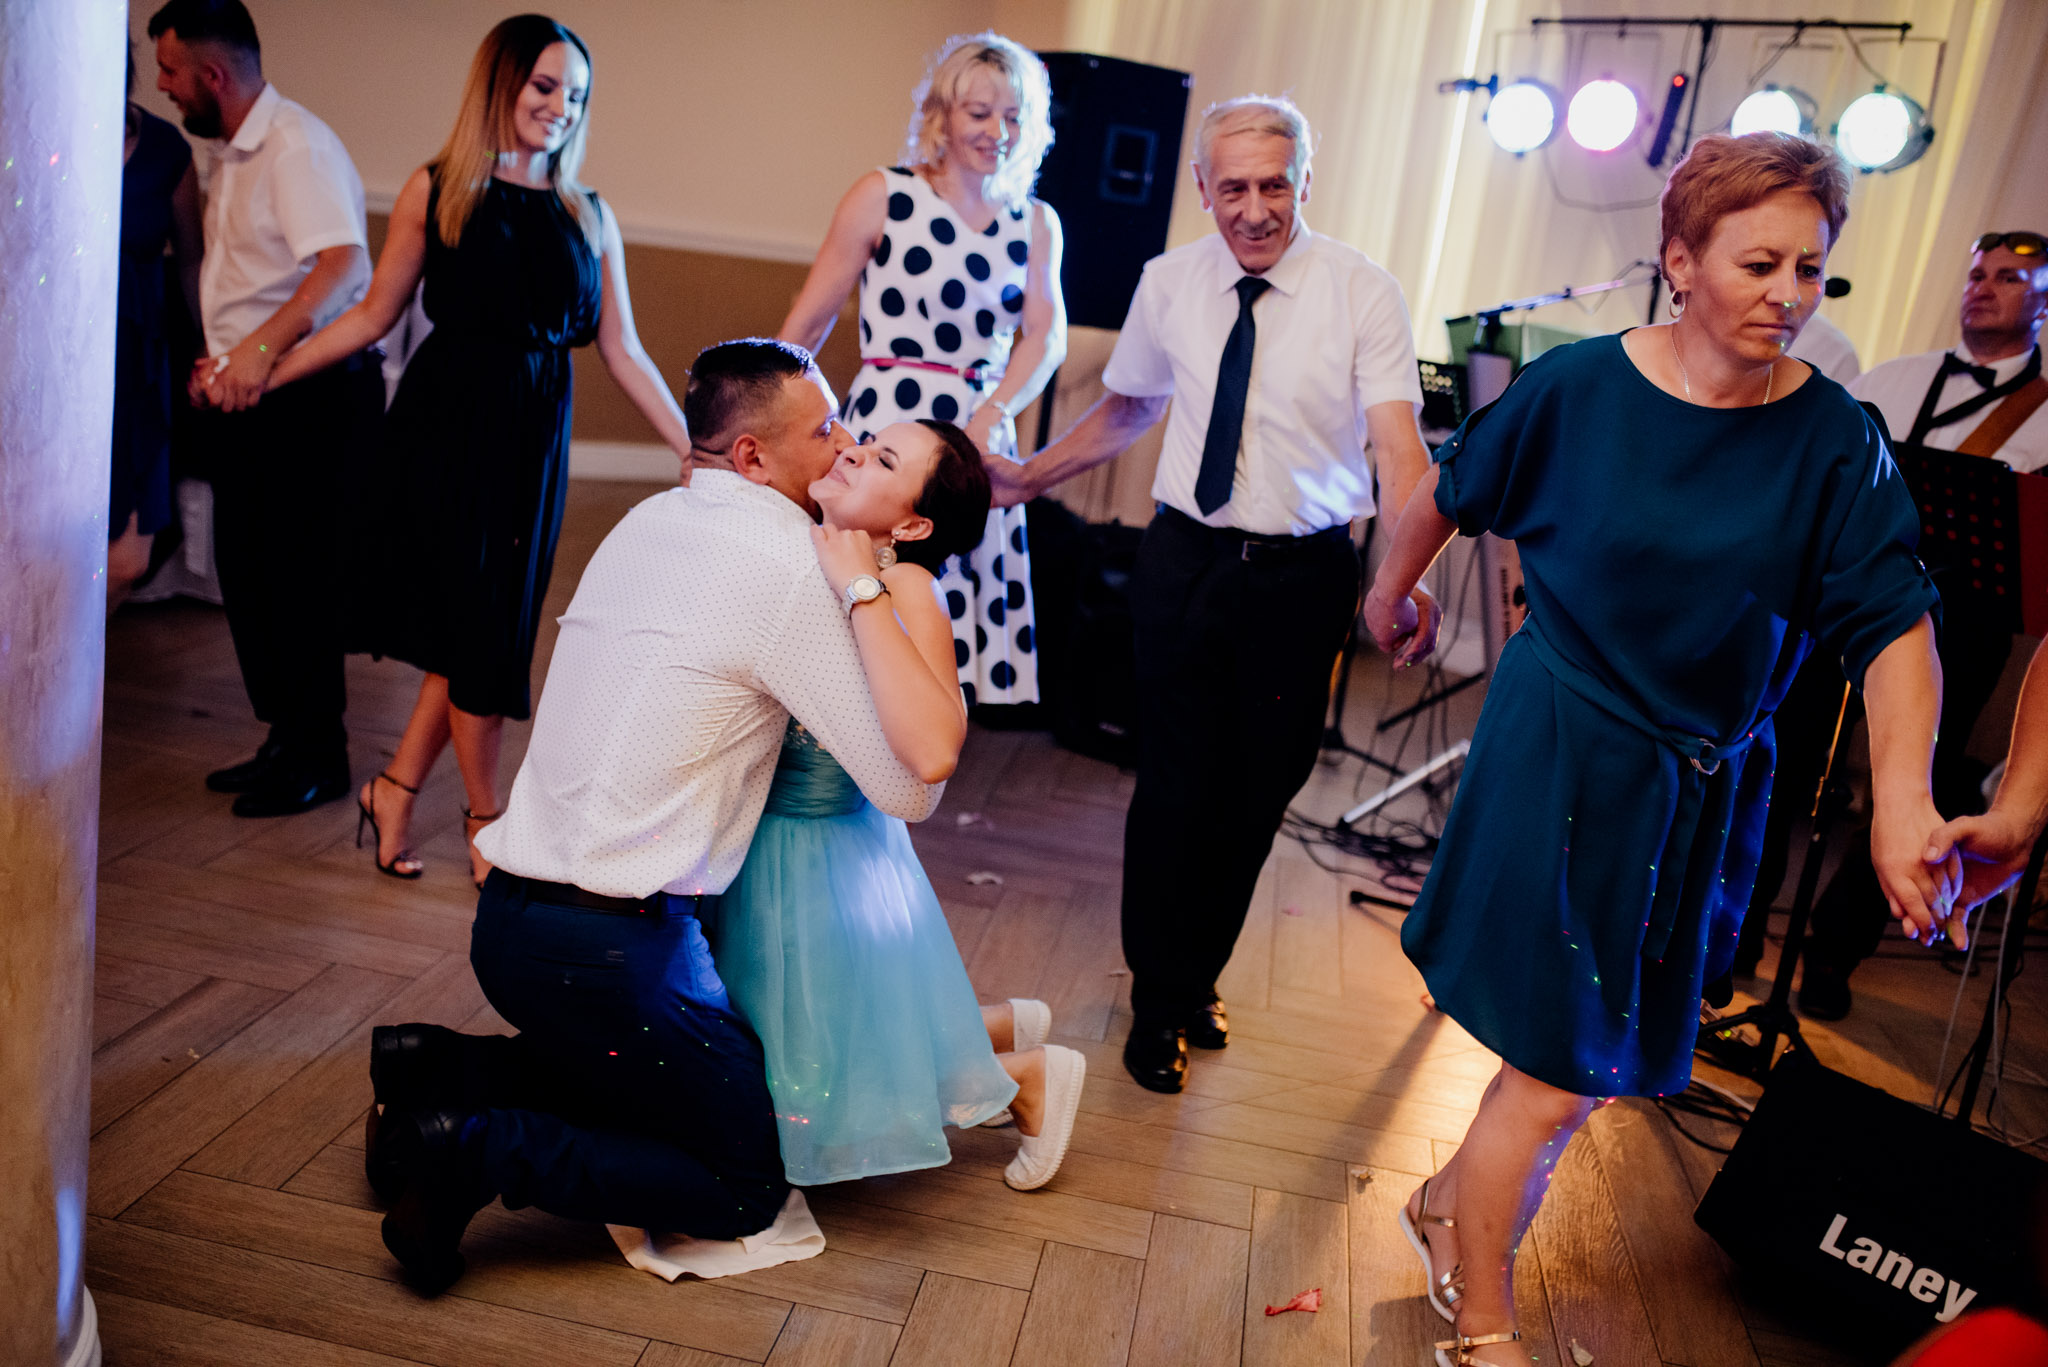 zabawa weselna, fotograf ślubny stalowa wola